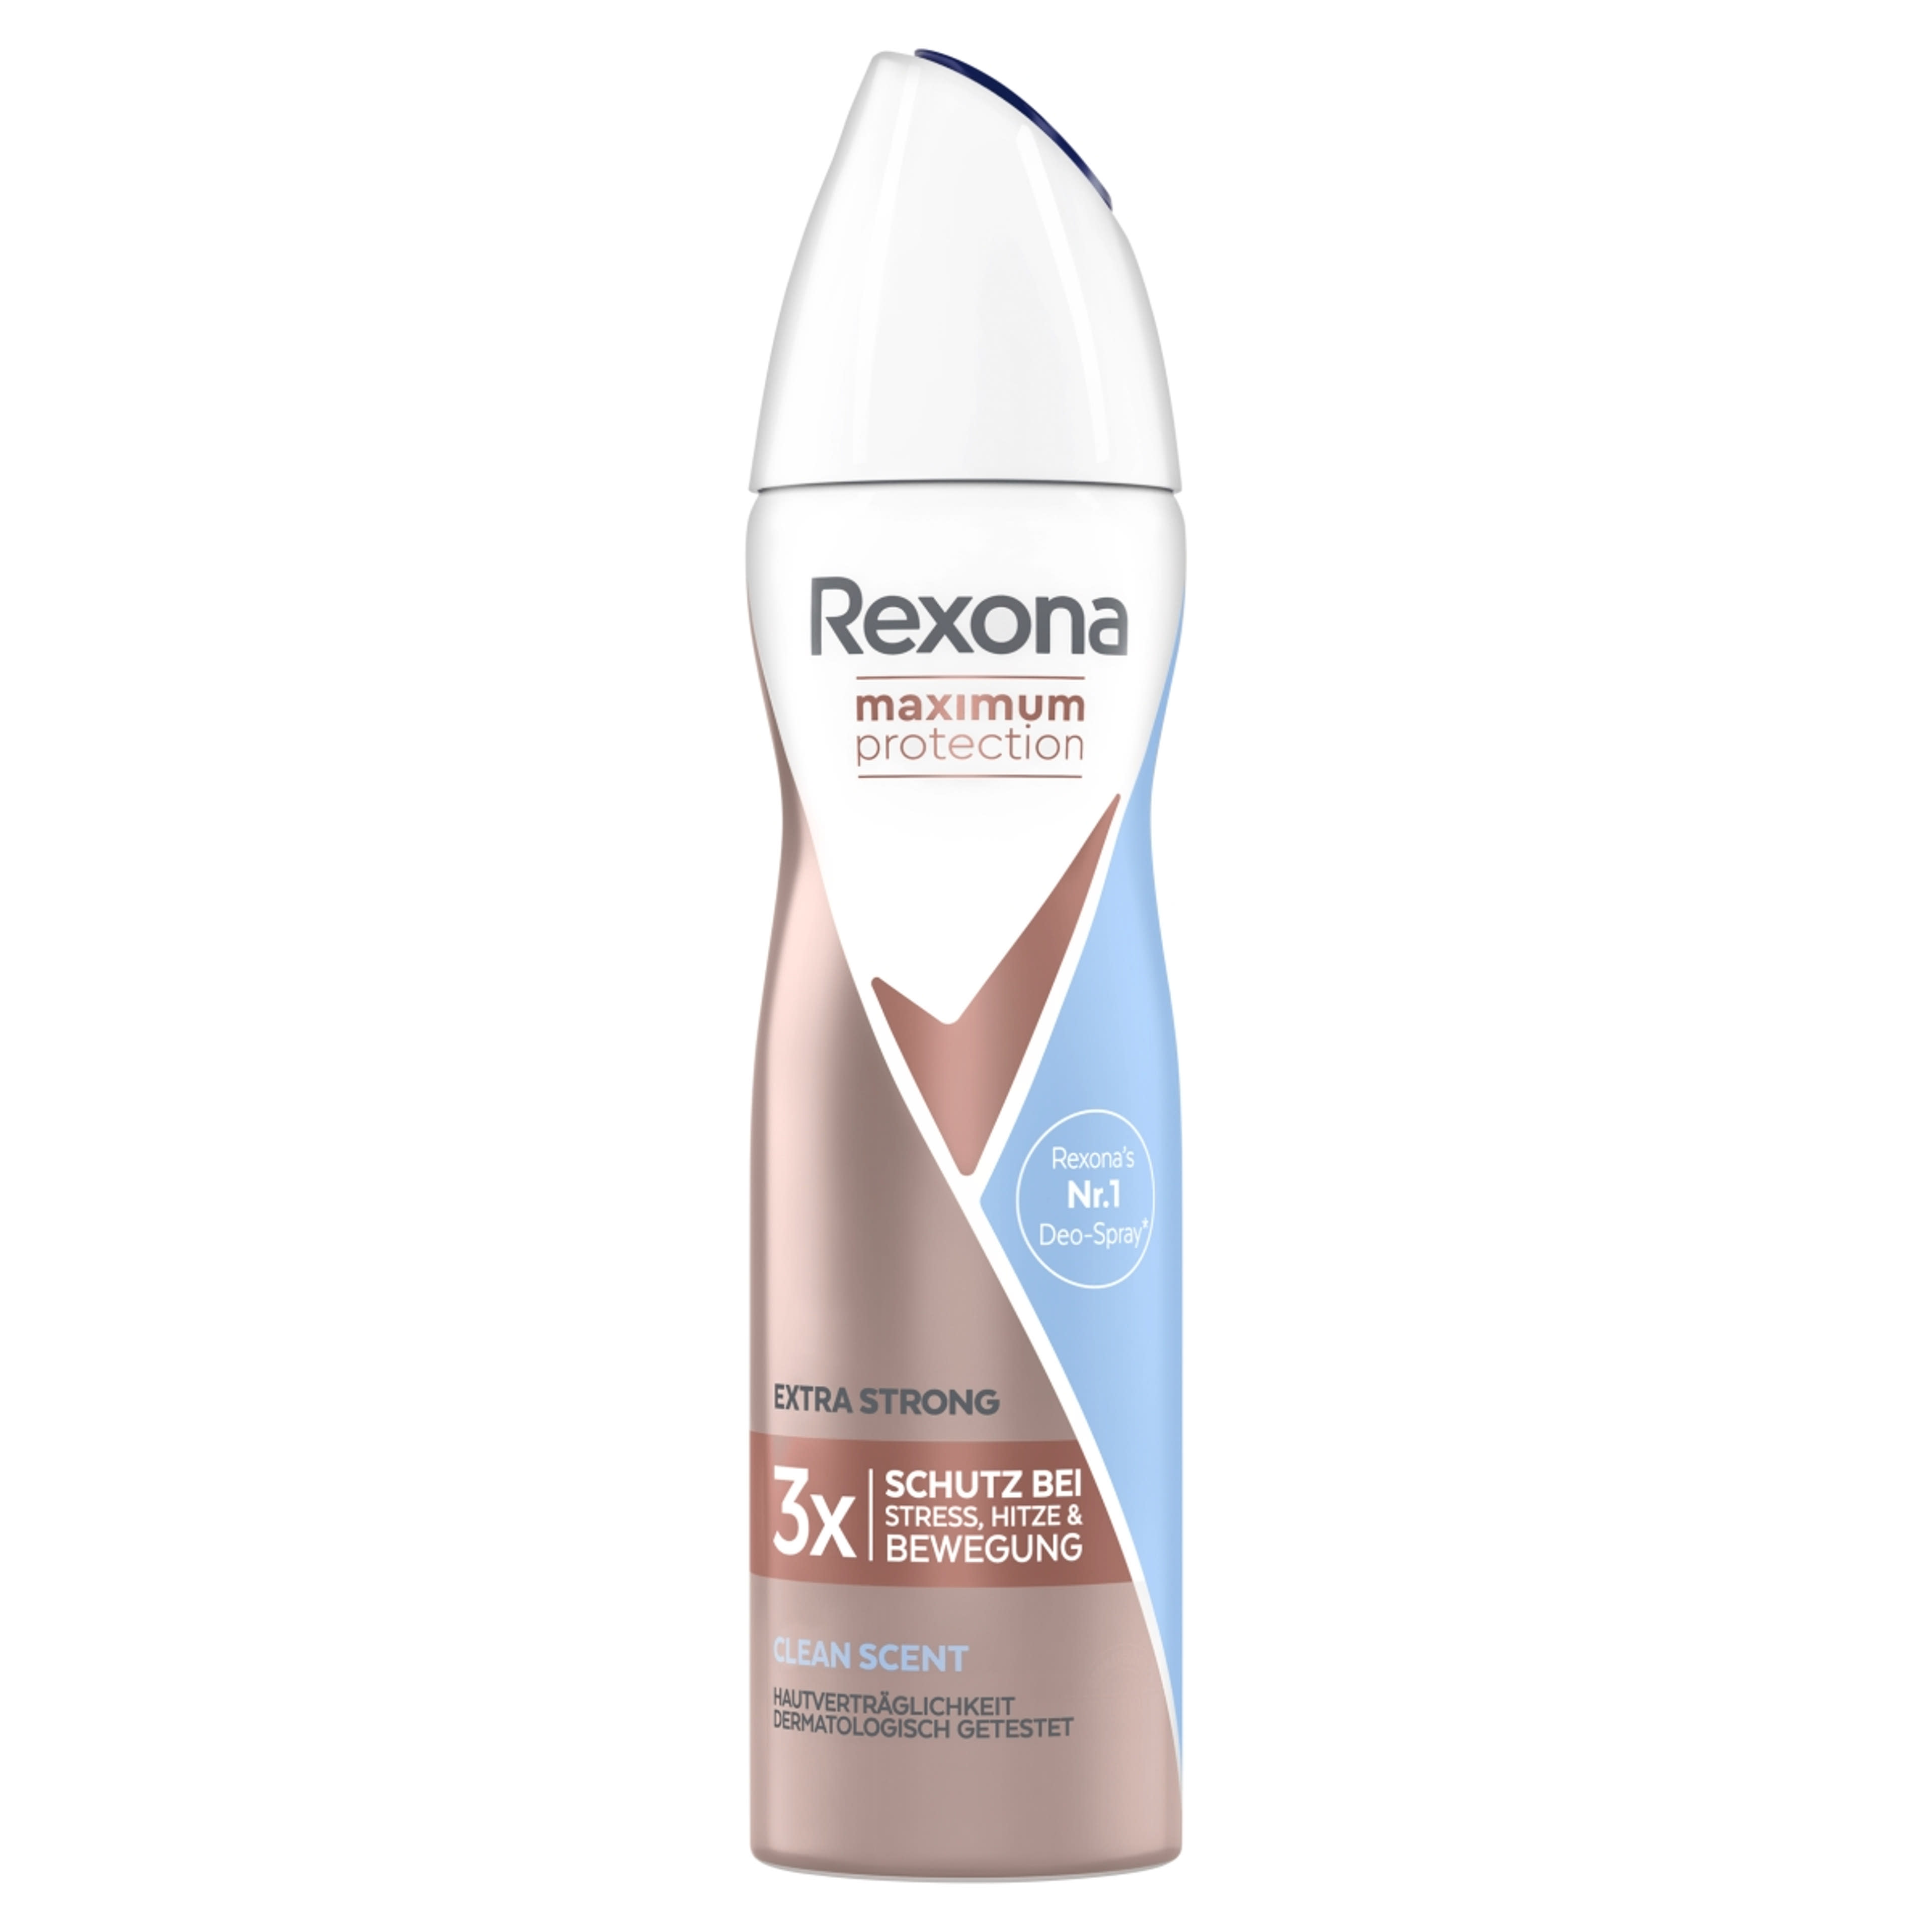 Rexona Maximum Protection Clean Scent dezodor - 150 ml-1